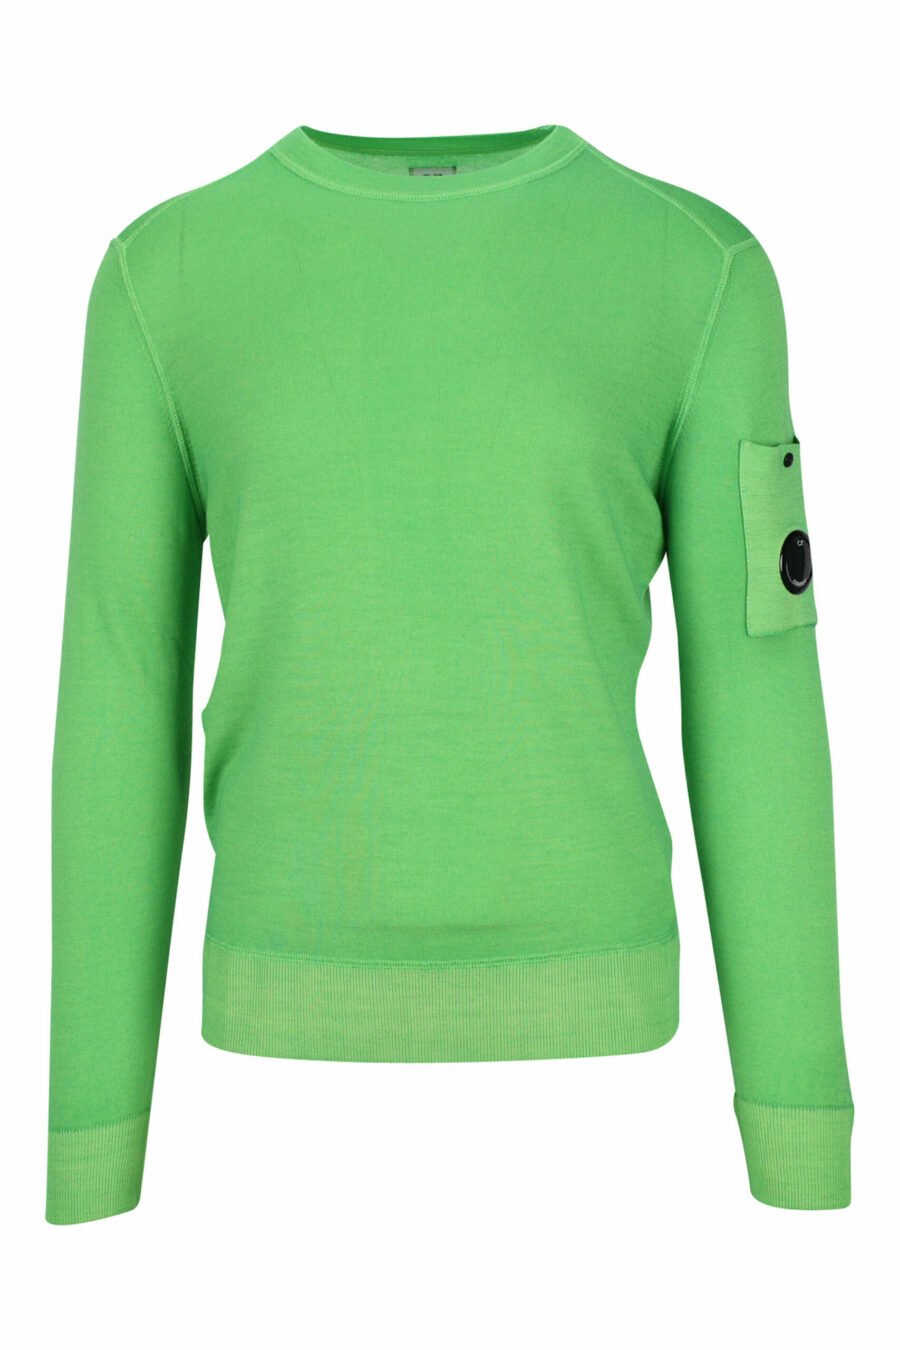 Sweatshirt vert avec logo latéral en forme de lentille - 7620943580846 scaled